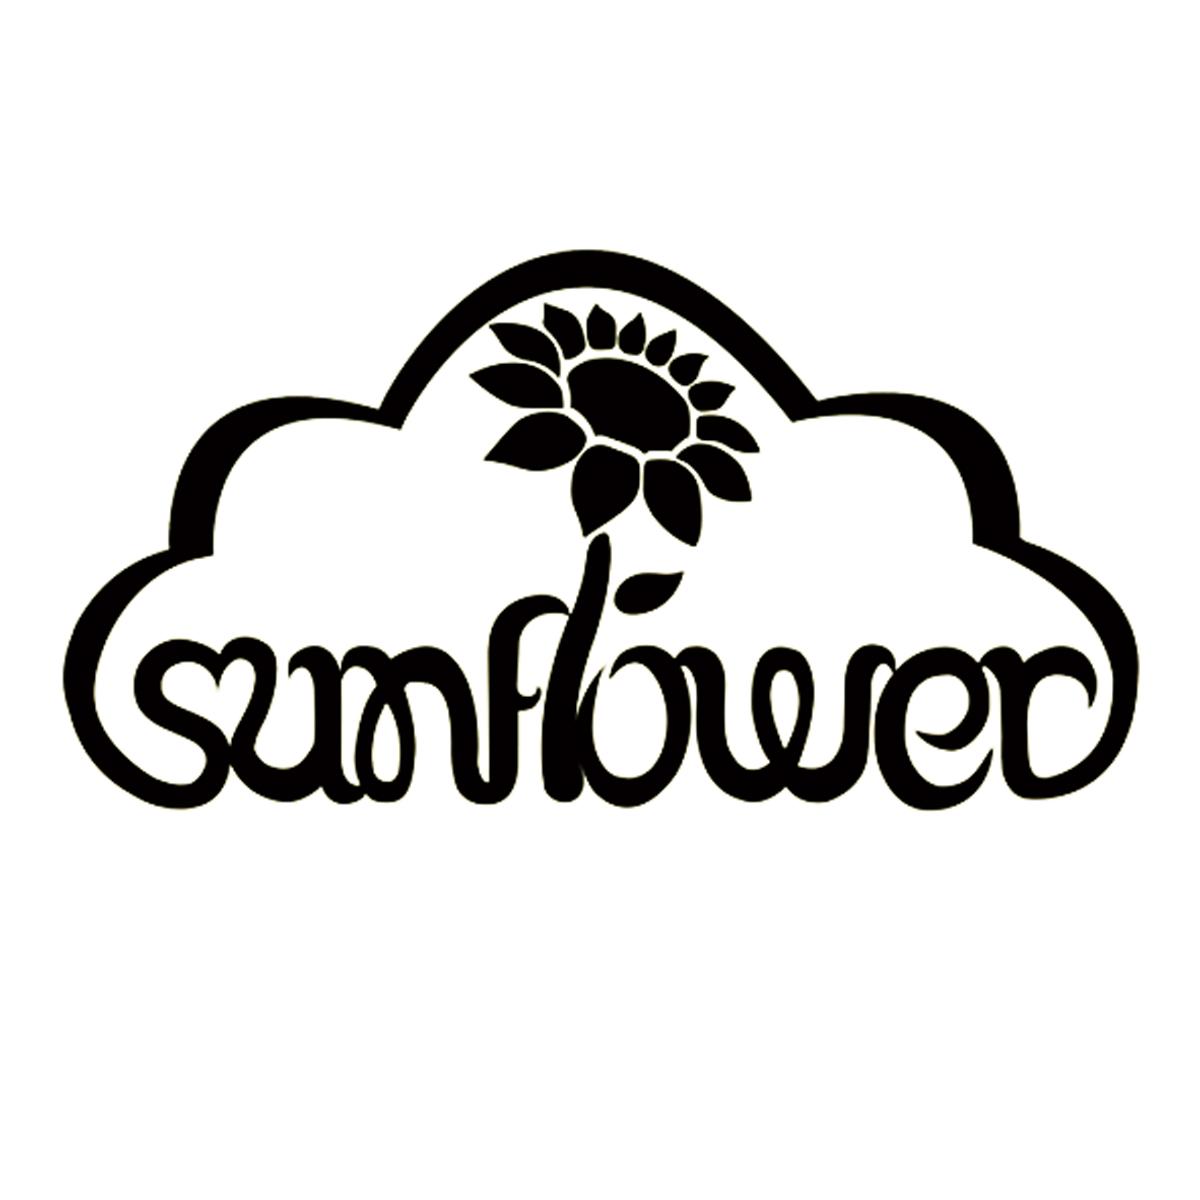 sunflower艺术字图片